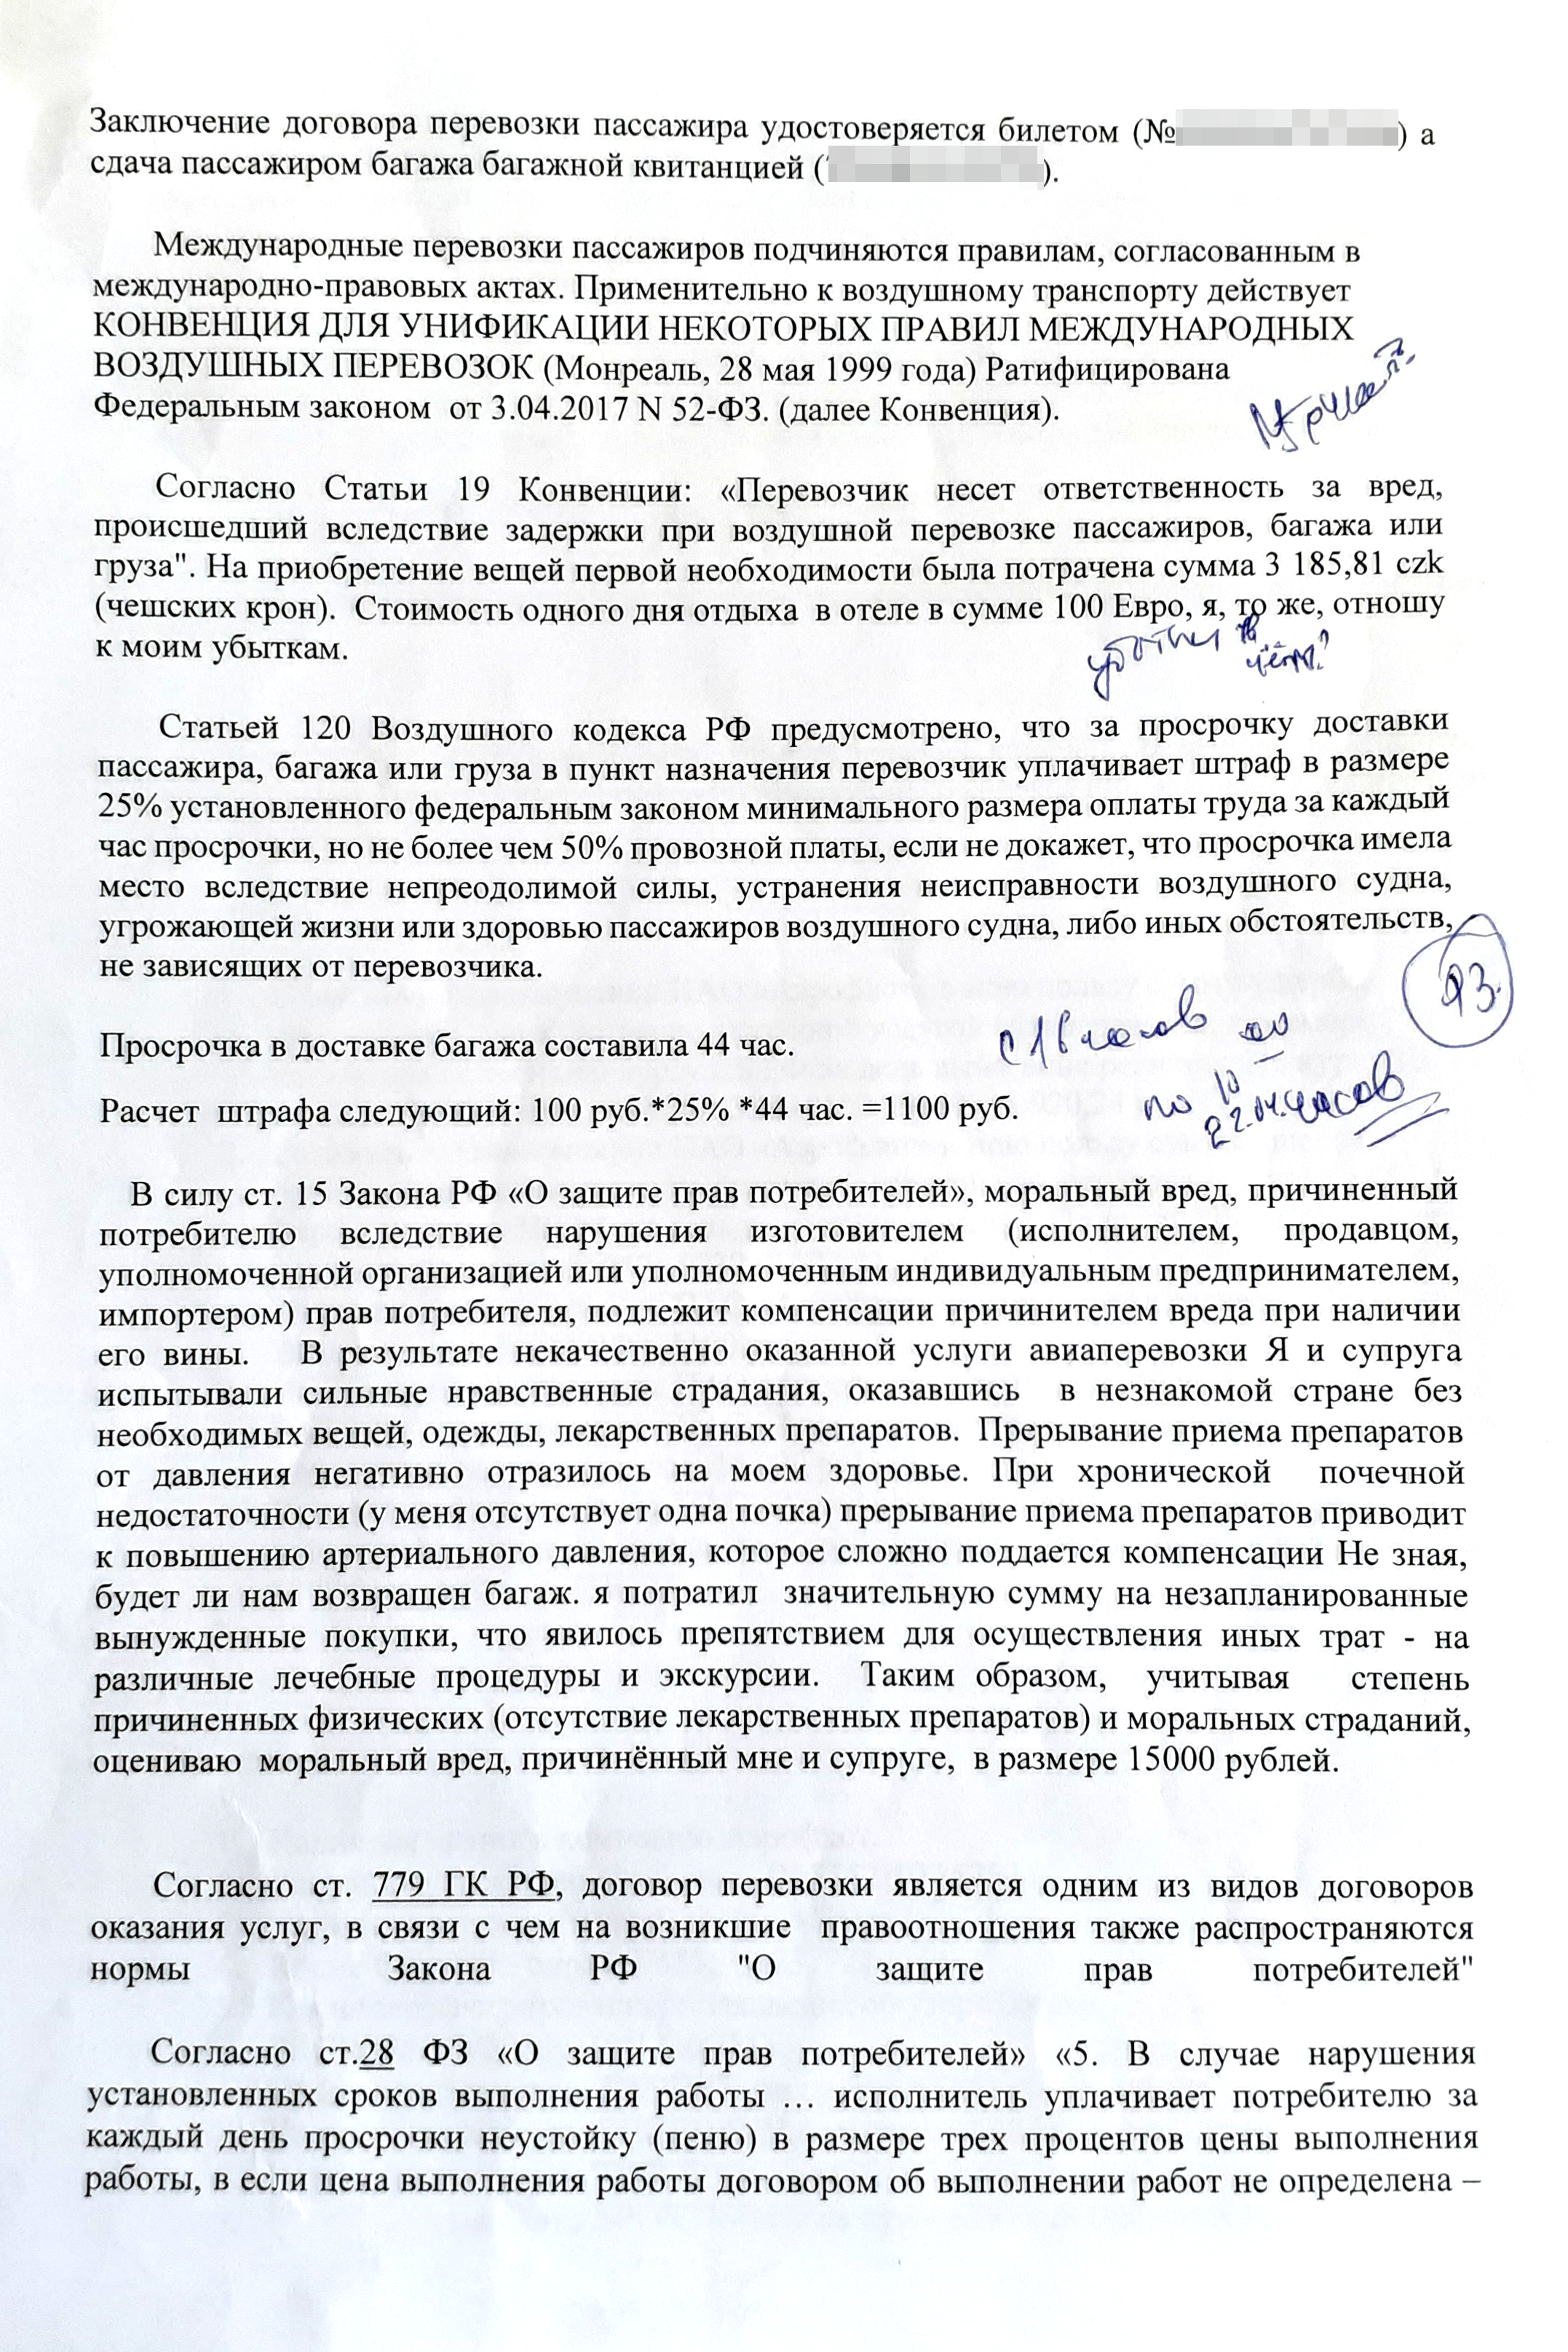 Иск Сергея к авиакомпании о компенсации за задержку багажа